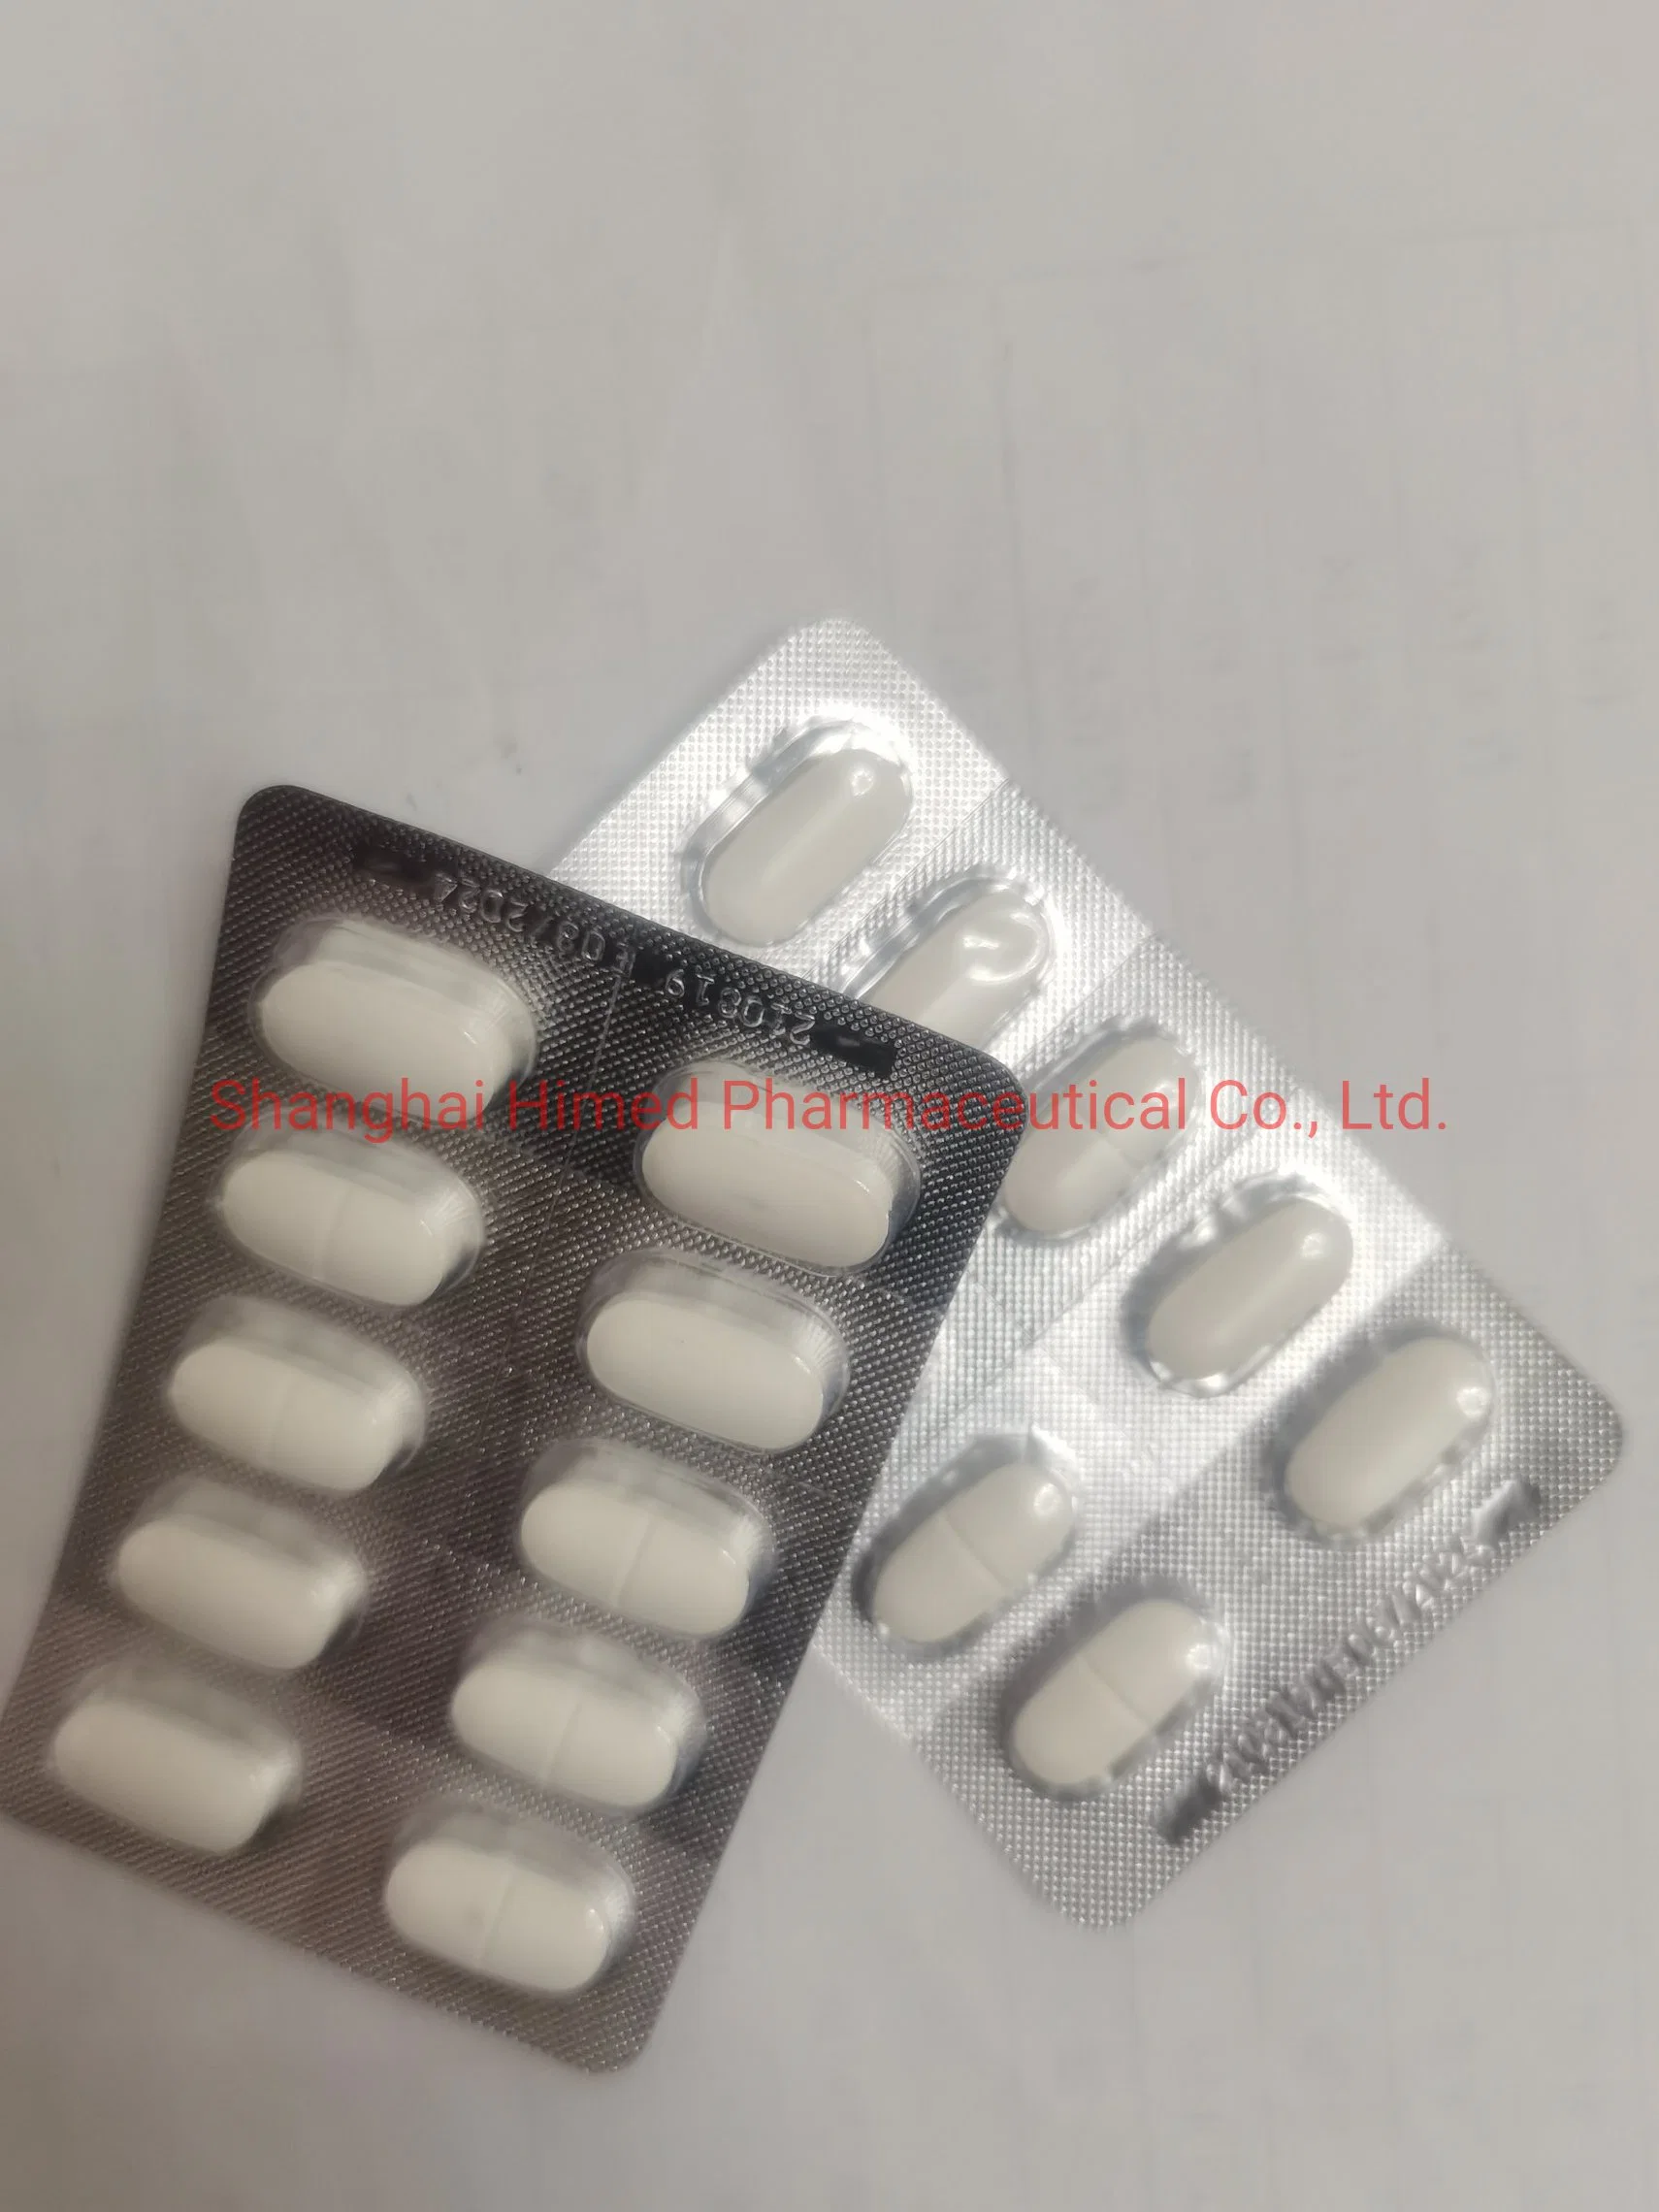 قرص Cipropyloxacin Hydrocoral HCl مغلف بطبقة رقيقة من الكلوريد الهيدروكلوريد 250mg 500 ملغ 750 ملغ الطب الغربي